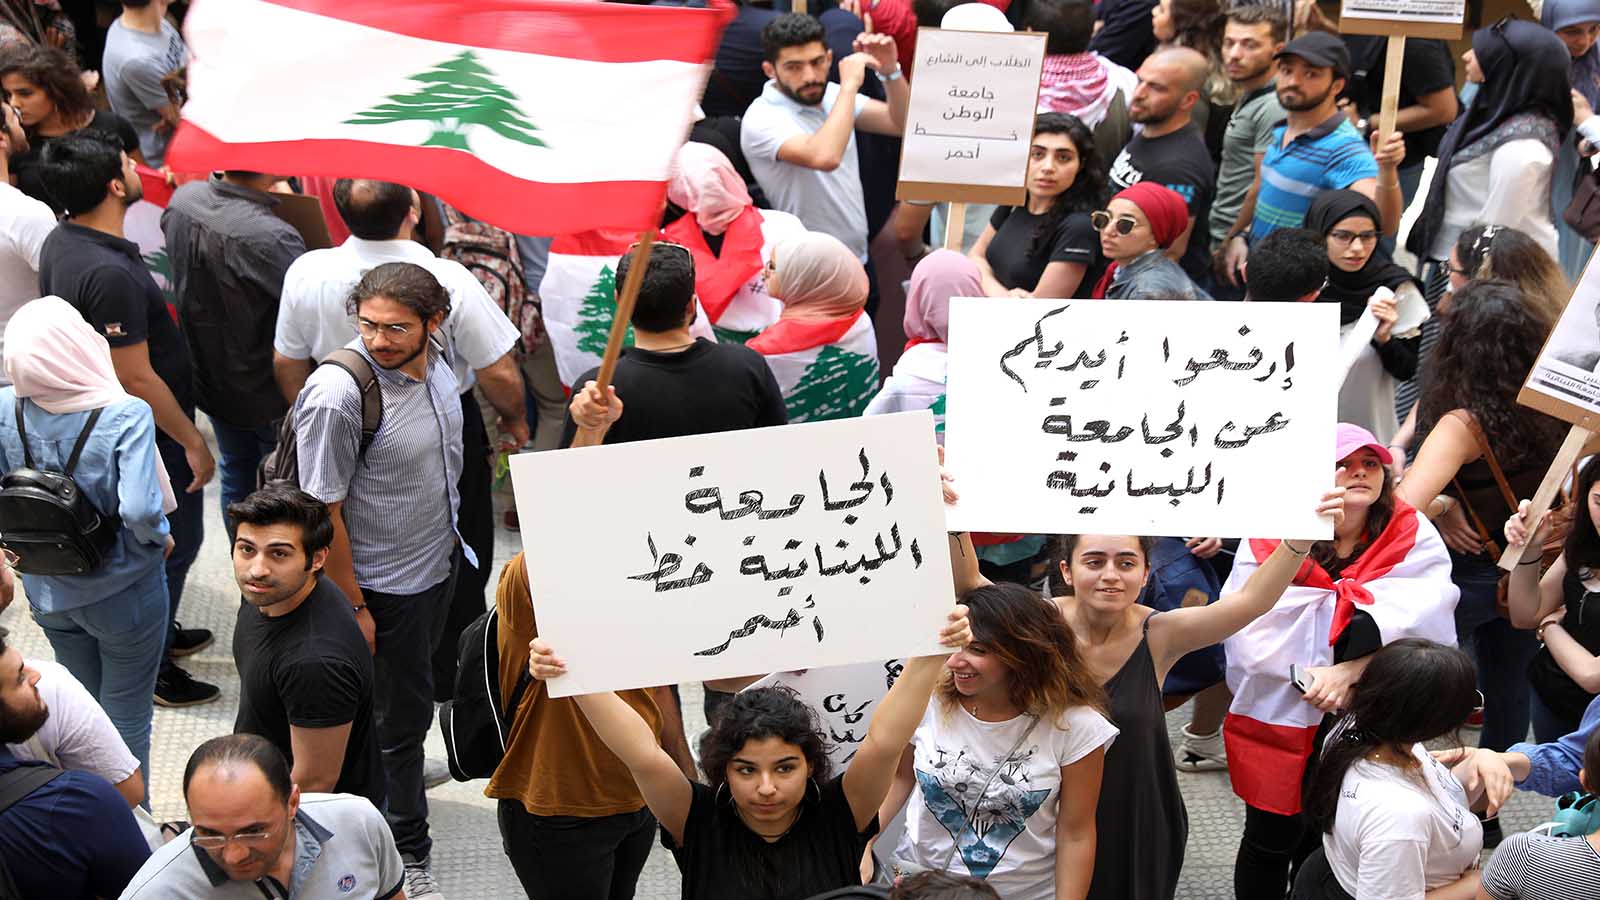 تمرّد أساتذة "اللبنانية"وطلابها على "الرابطة" بعد فكّ الإضراب